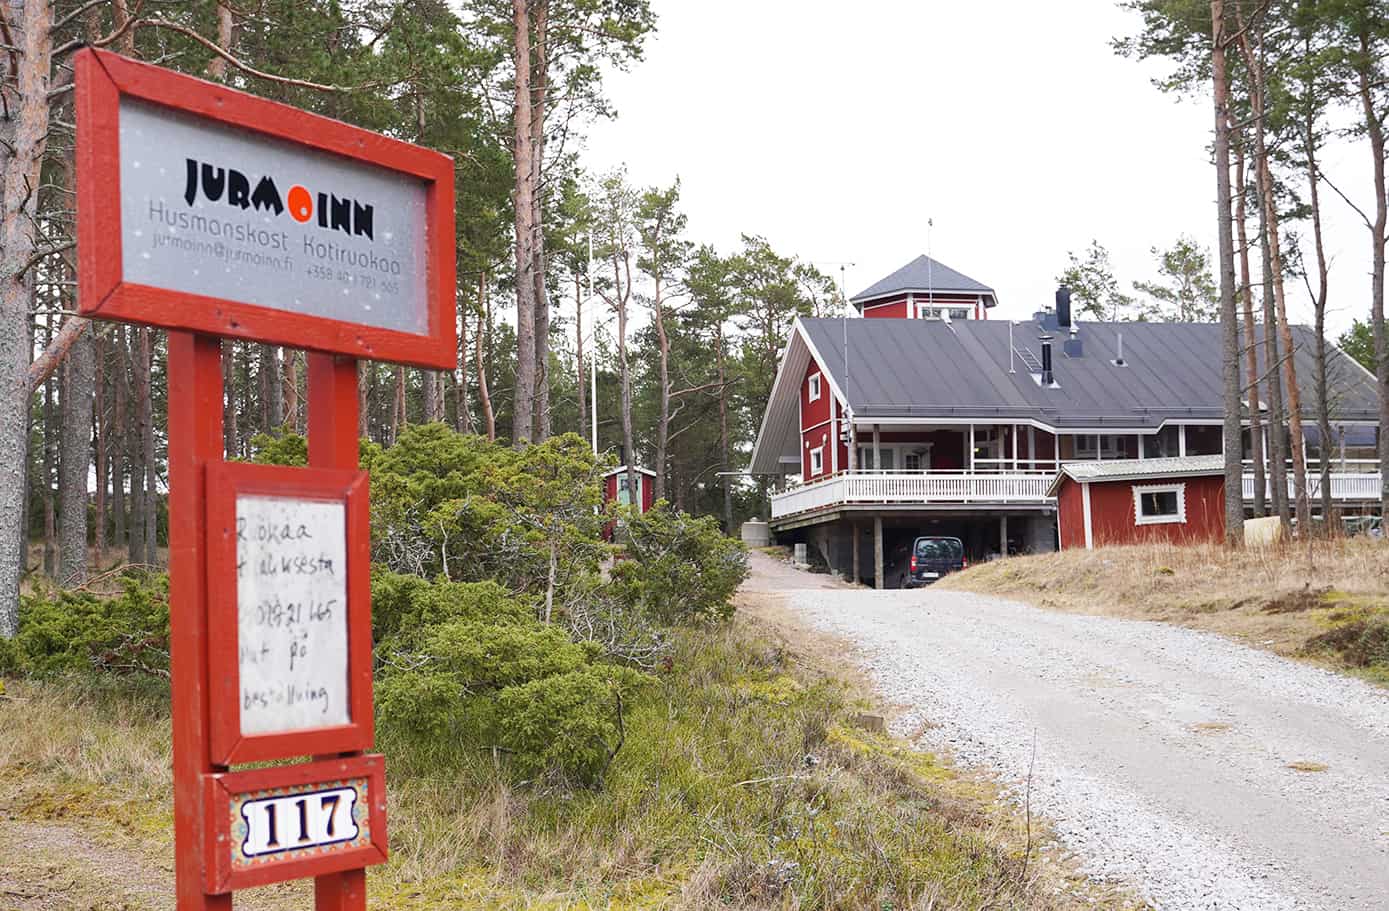 Jurmo Inn expanderar sin restaurangverksamhet i sommar